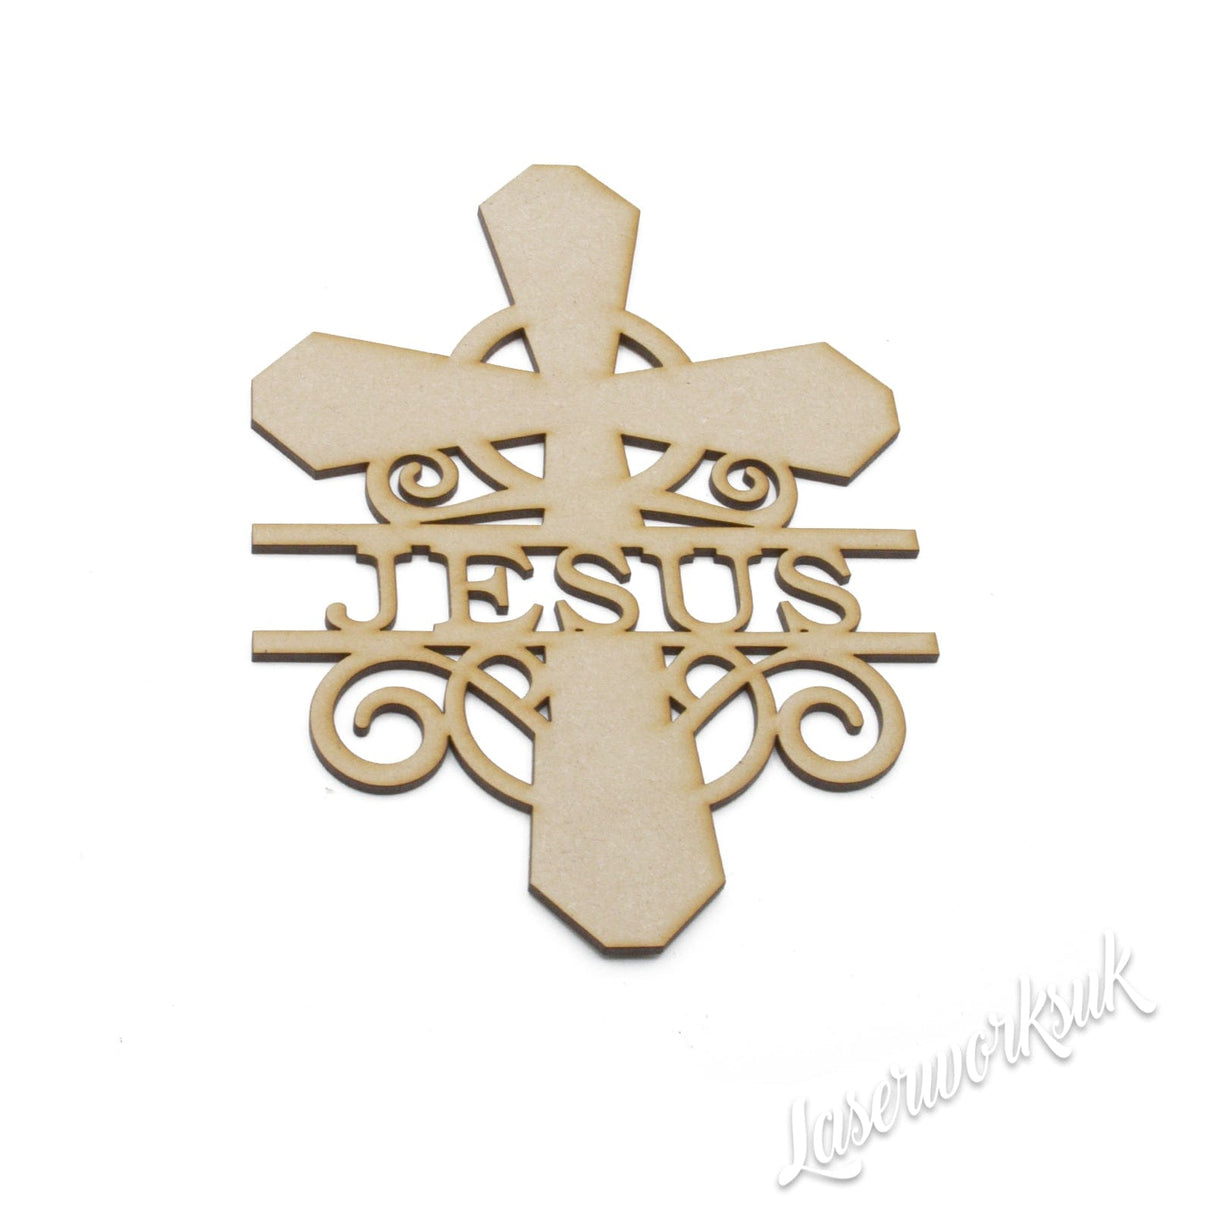 Personalized Wooden Cross Monograms - Laserworksuk